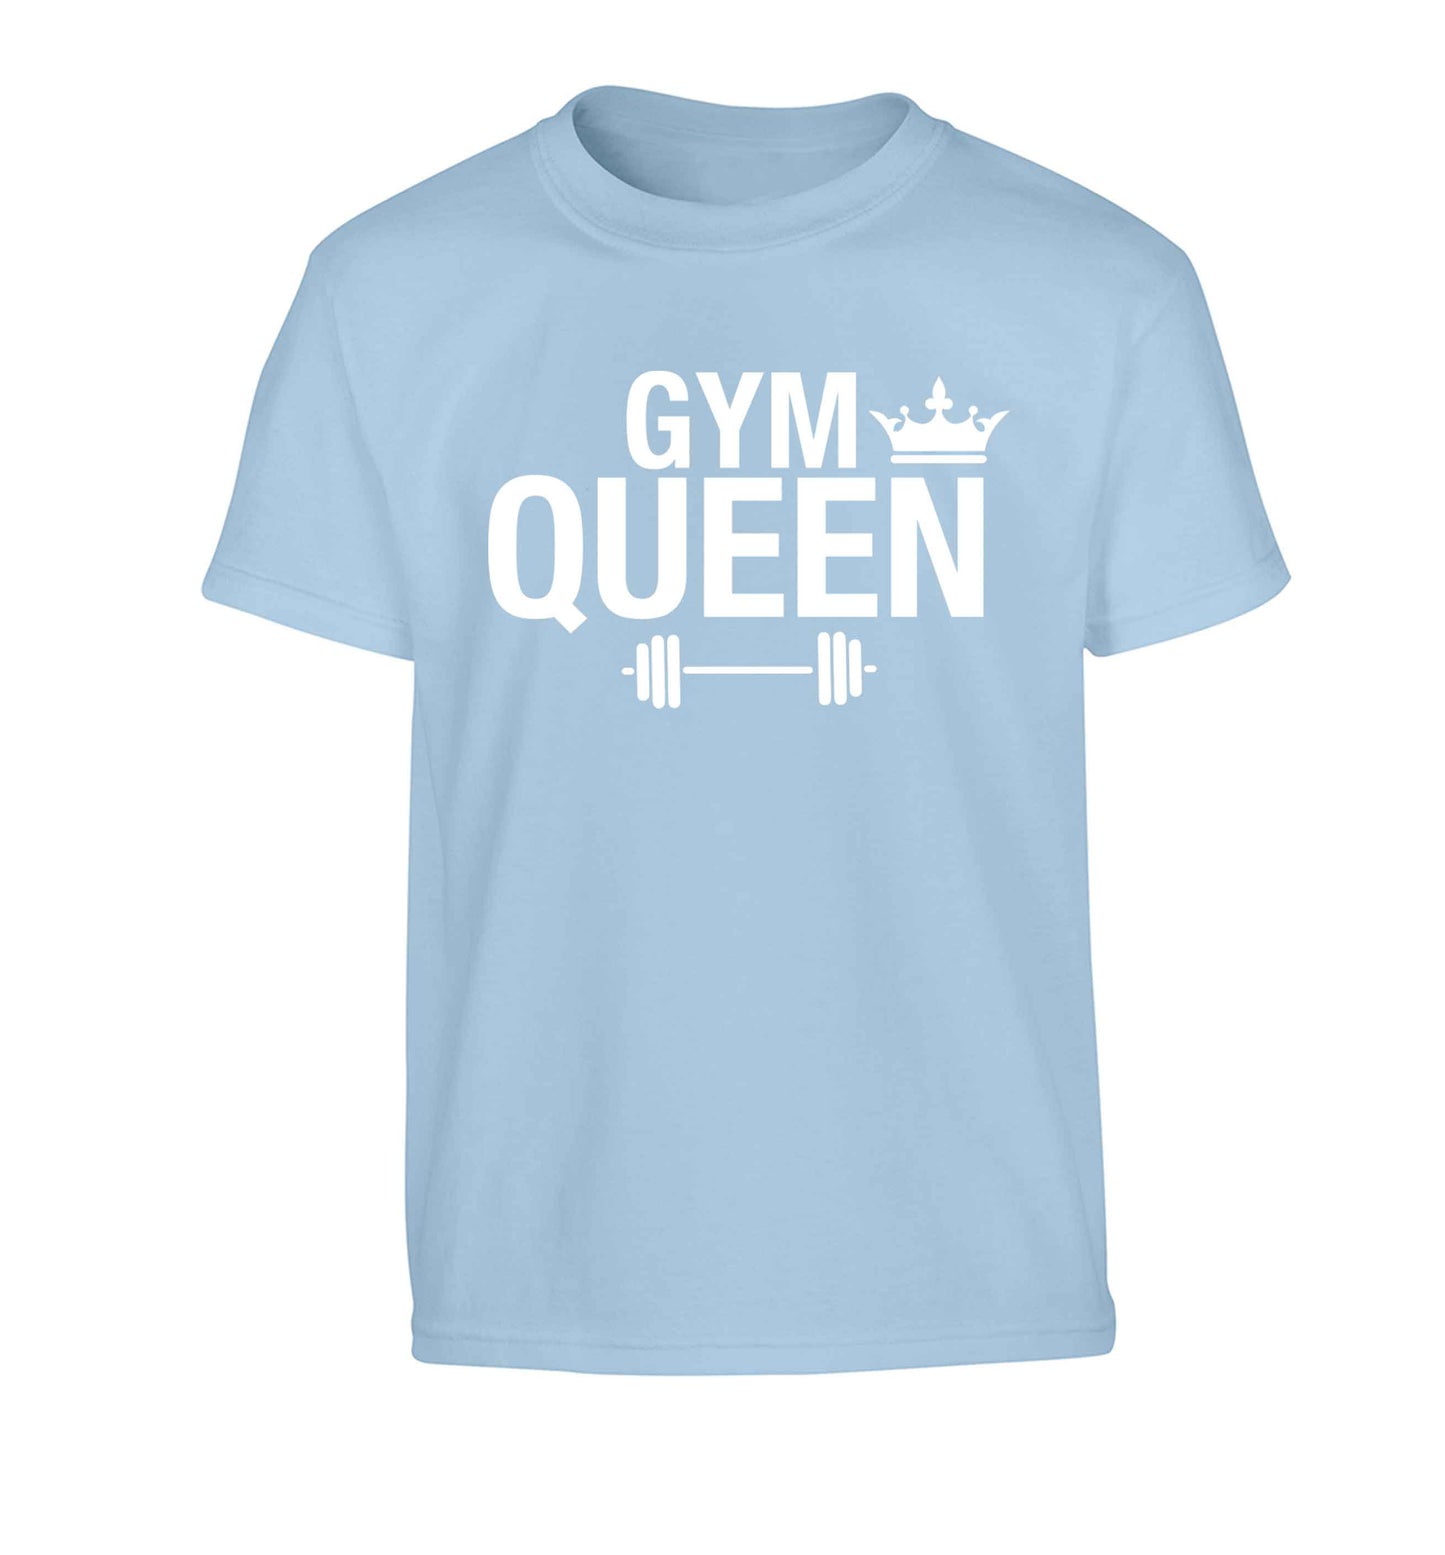 Gym queen Children's light blue Tshirt 12-13 Years